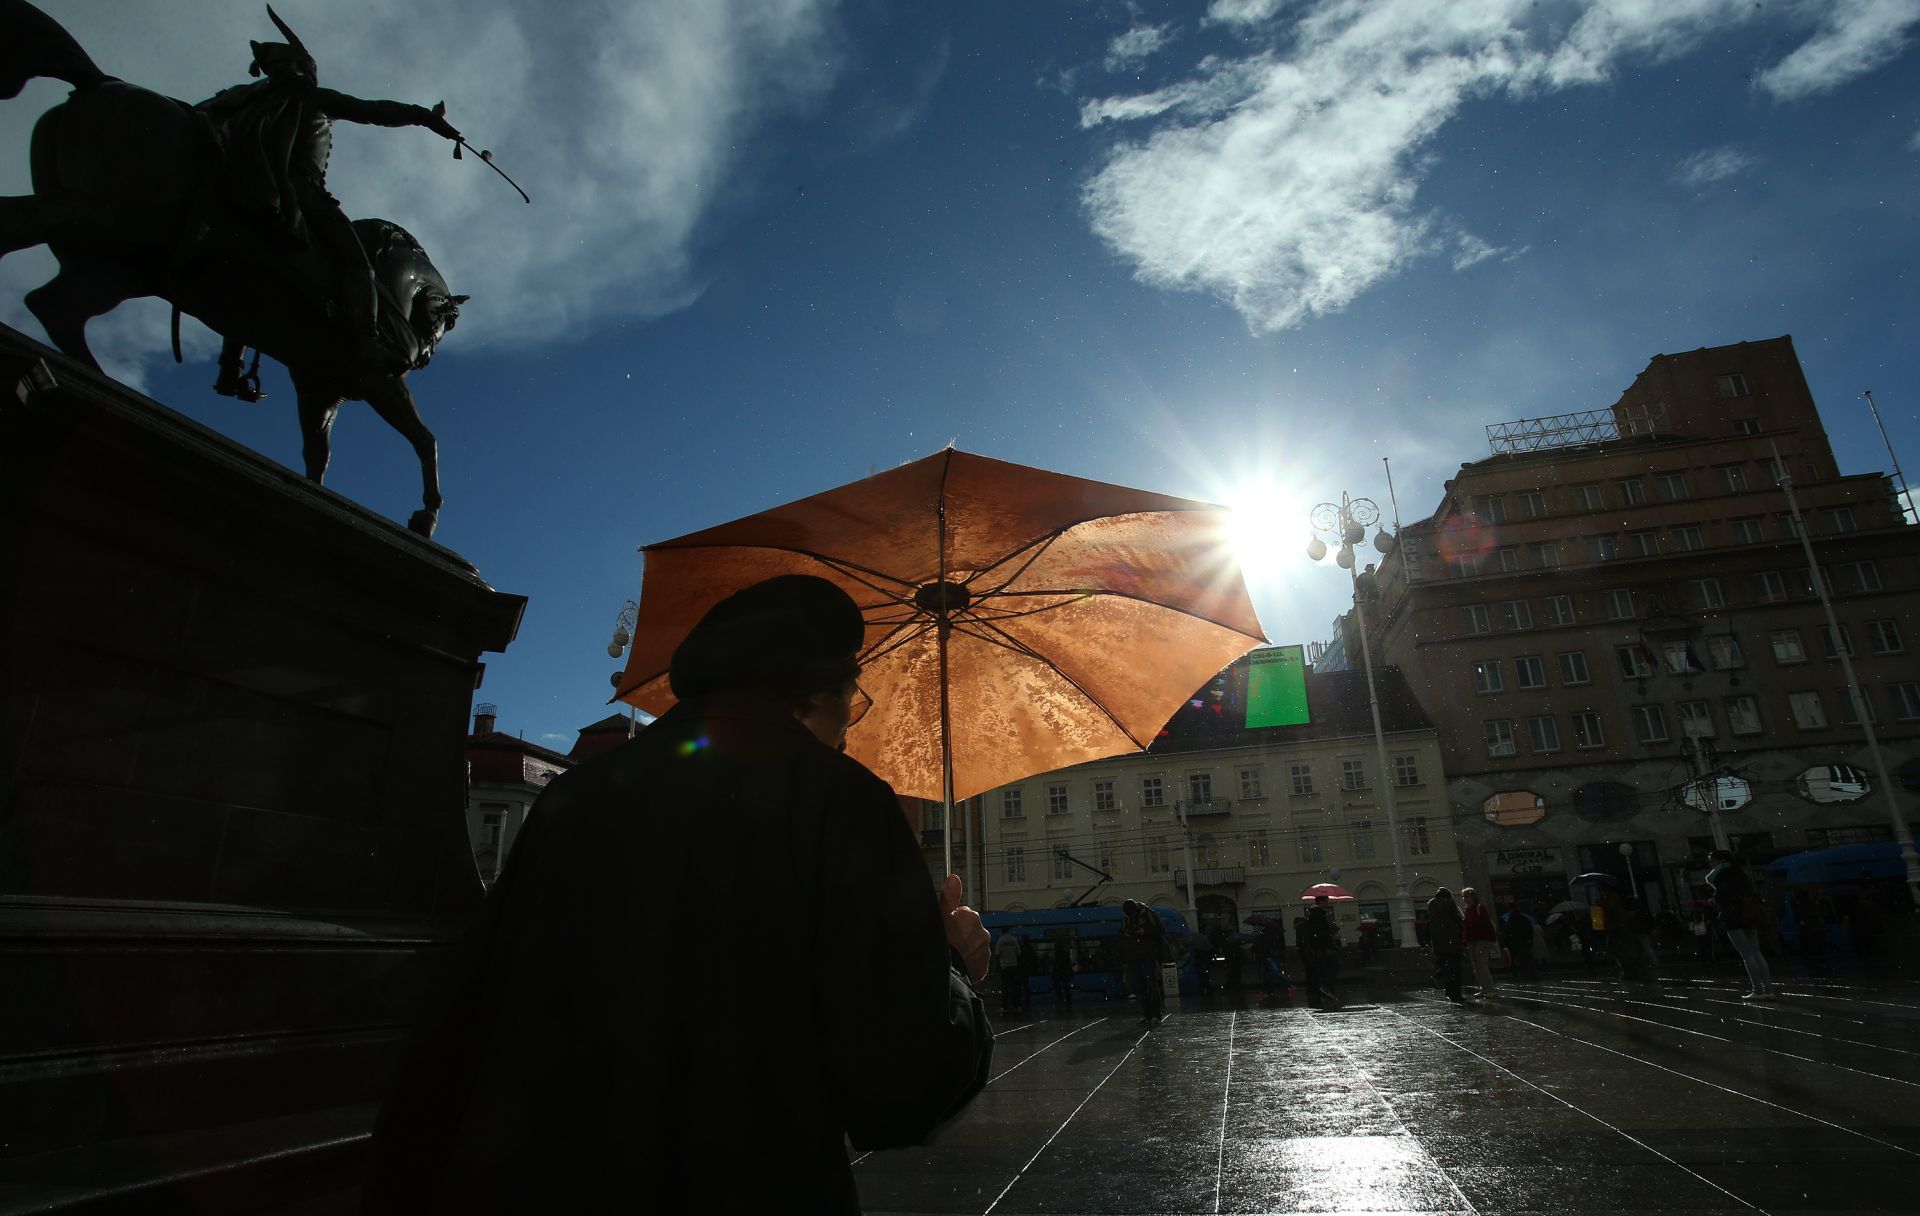 18.11.2014., Zagreb - Zanimljiv prizor na glavnom gradskom trgu uprilicio je trenutak kada je istovremeno padala kisa i zasjalo jako sunce. Photo: Sanjin Strukic/PIXSELL